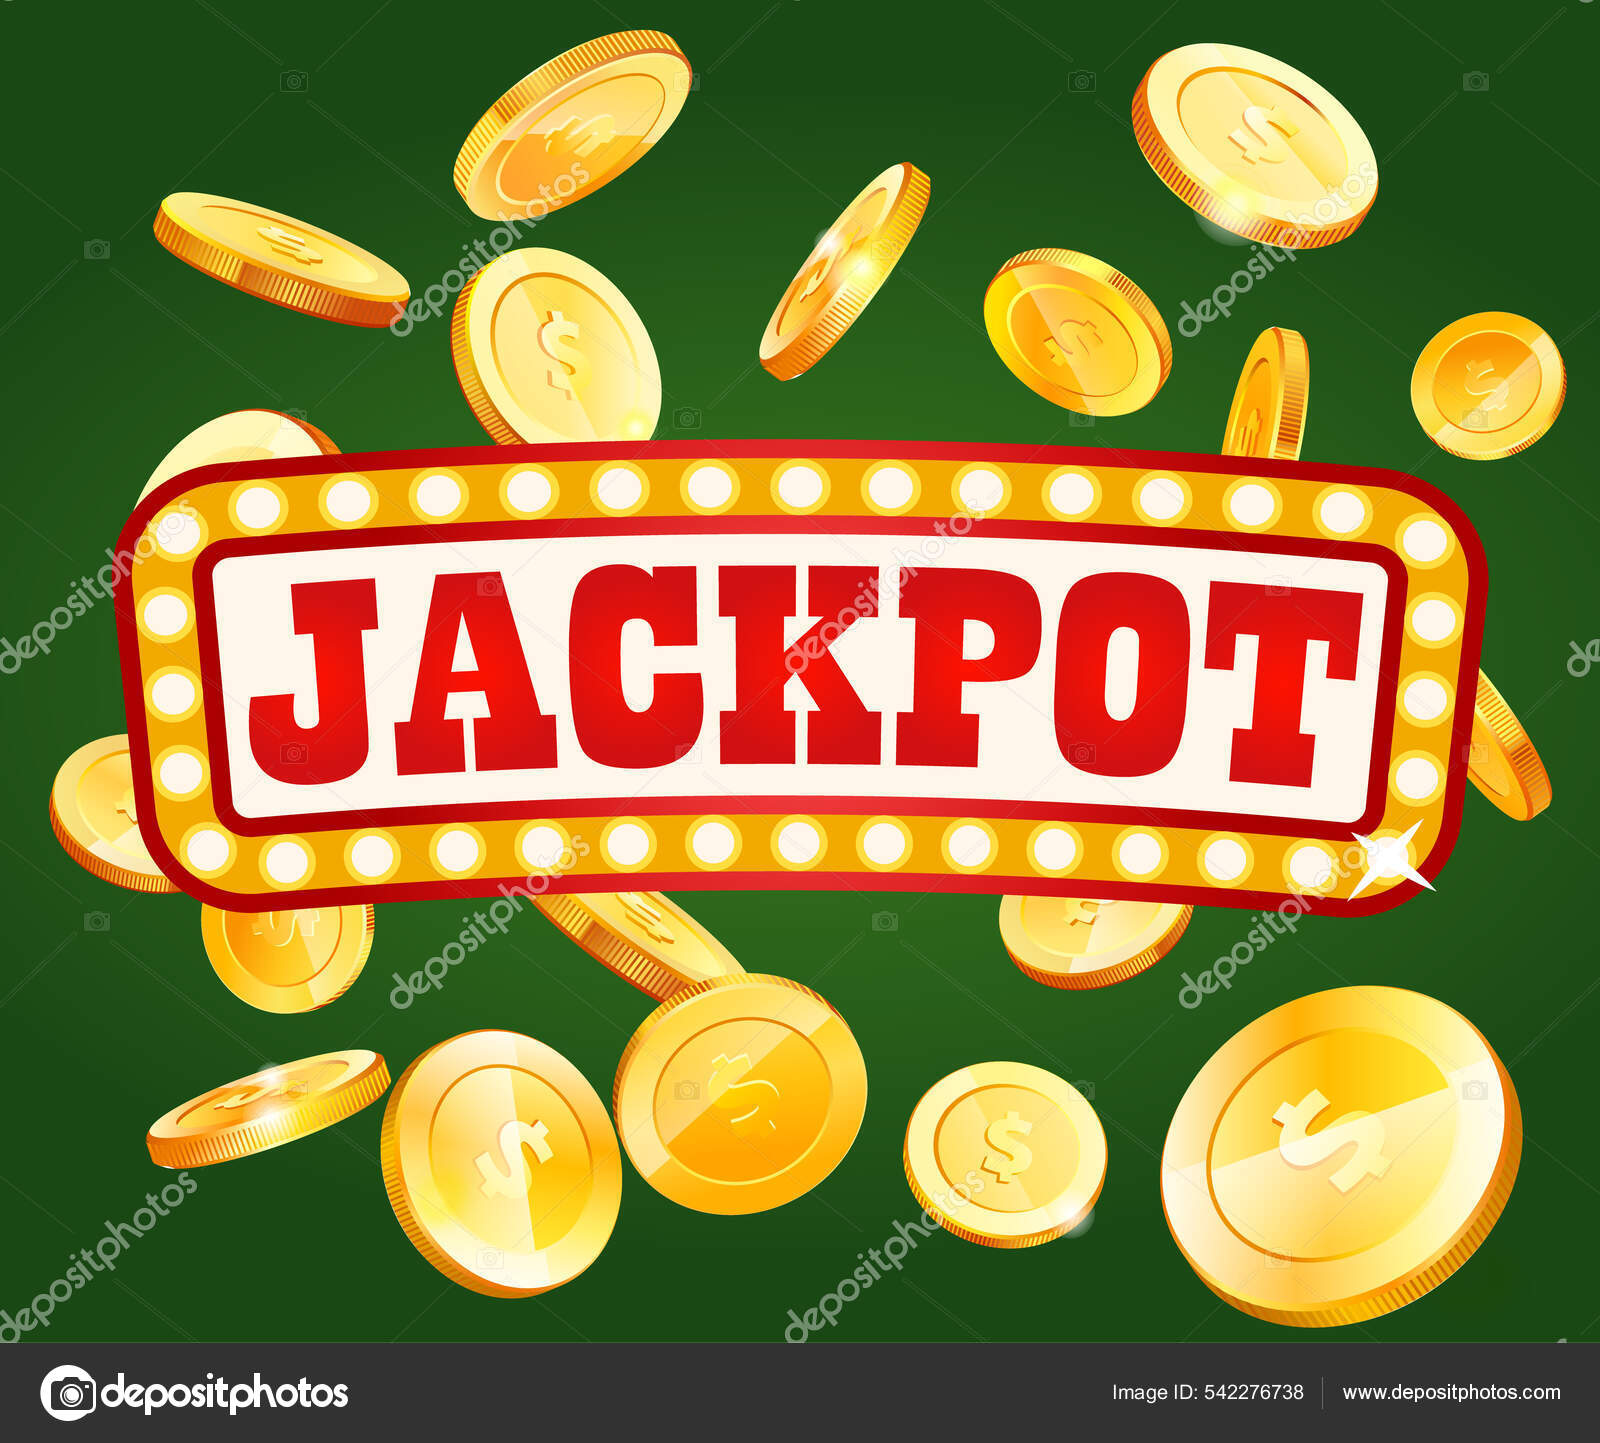 Jackpot Dinero en Juego